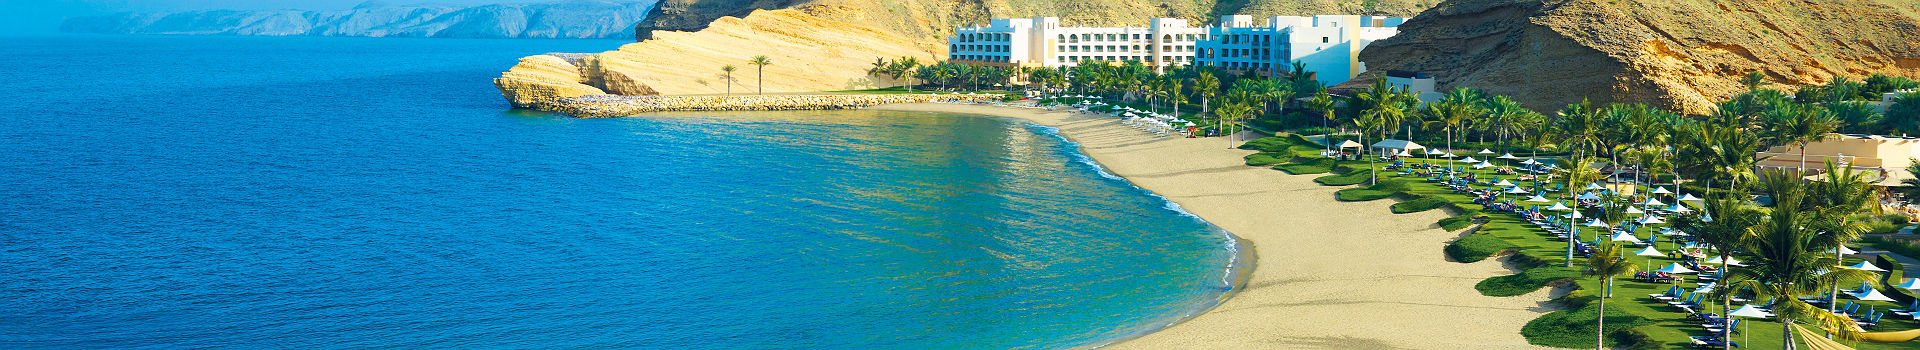 Shangri La Al Waha - Mascate - Oman